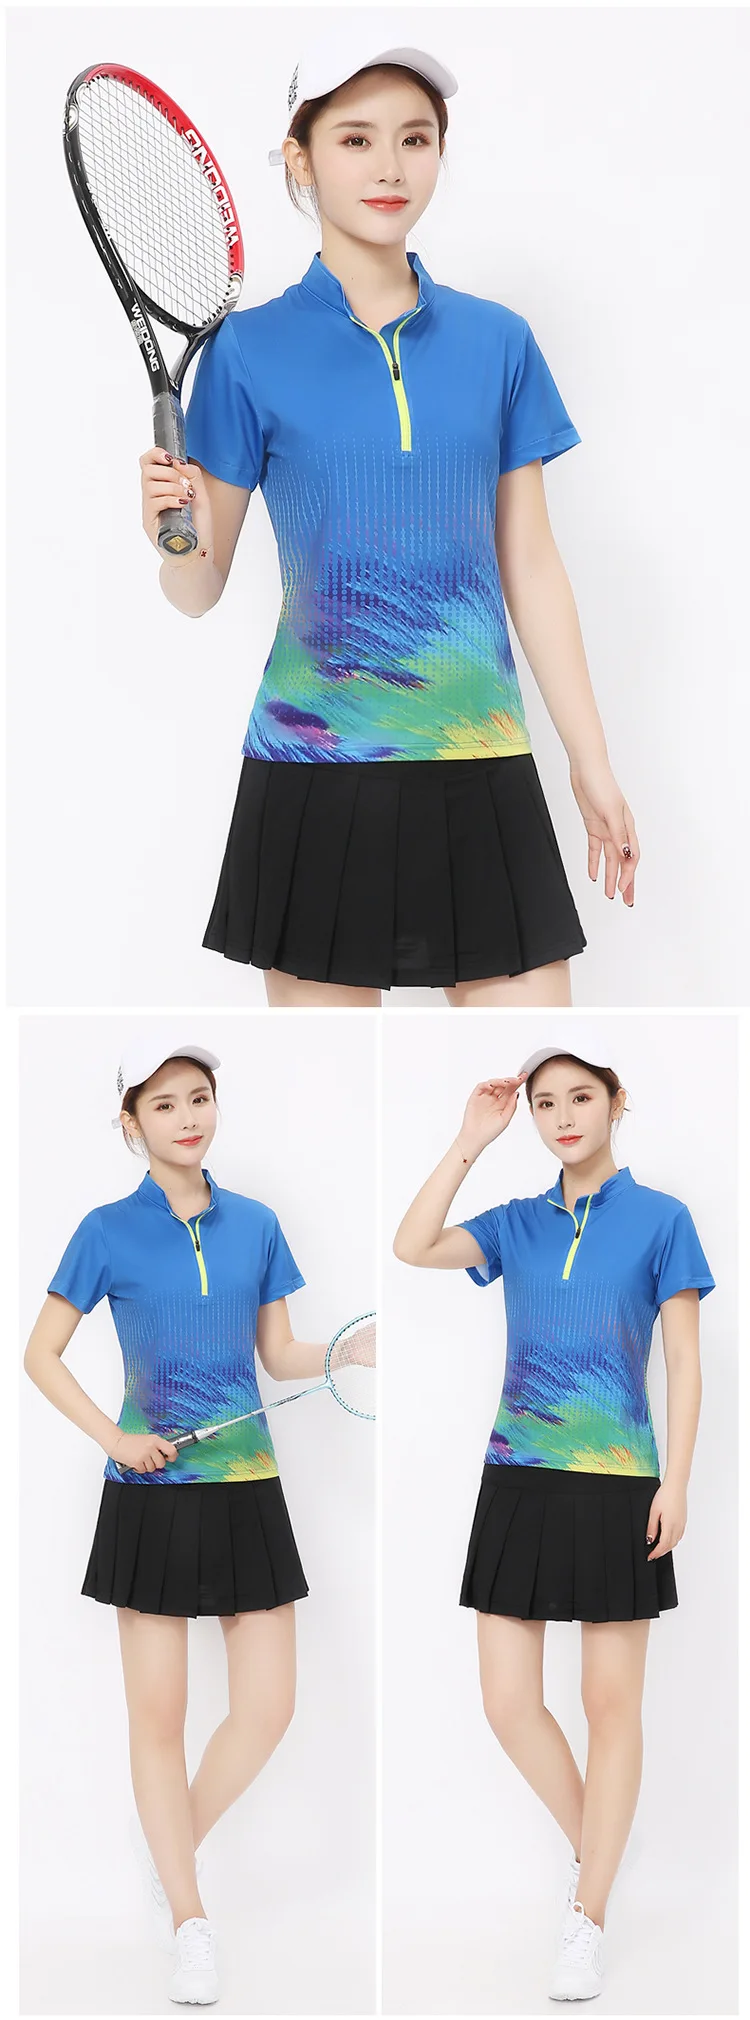 Jingdong летняя универсальная анти-экспозиционная юбка теннисная юбка женская юбка Волан футболка короткая юбка спортивный комплект квадратный танец